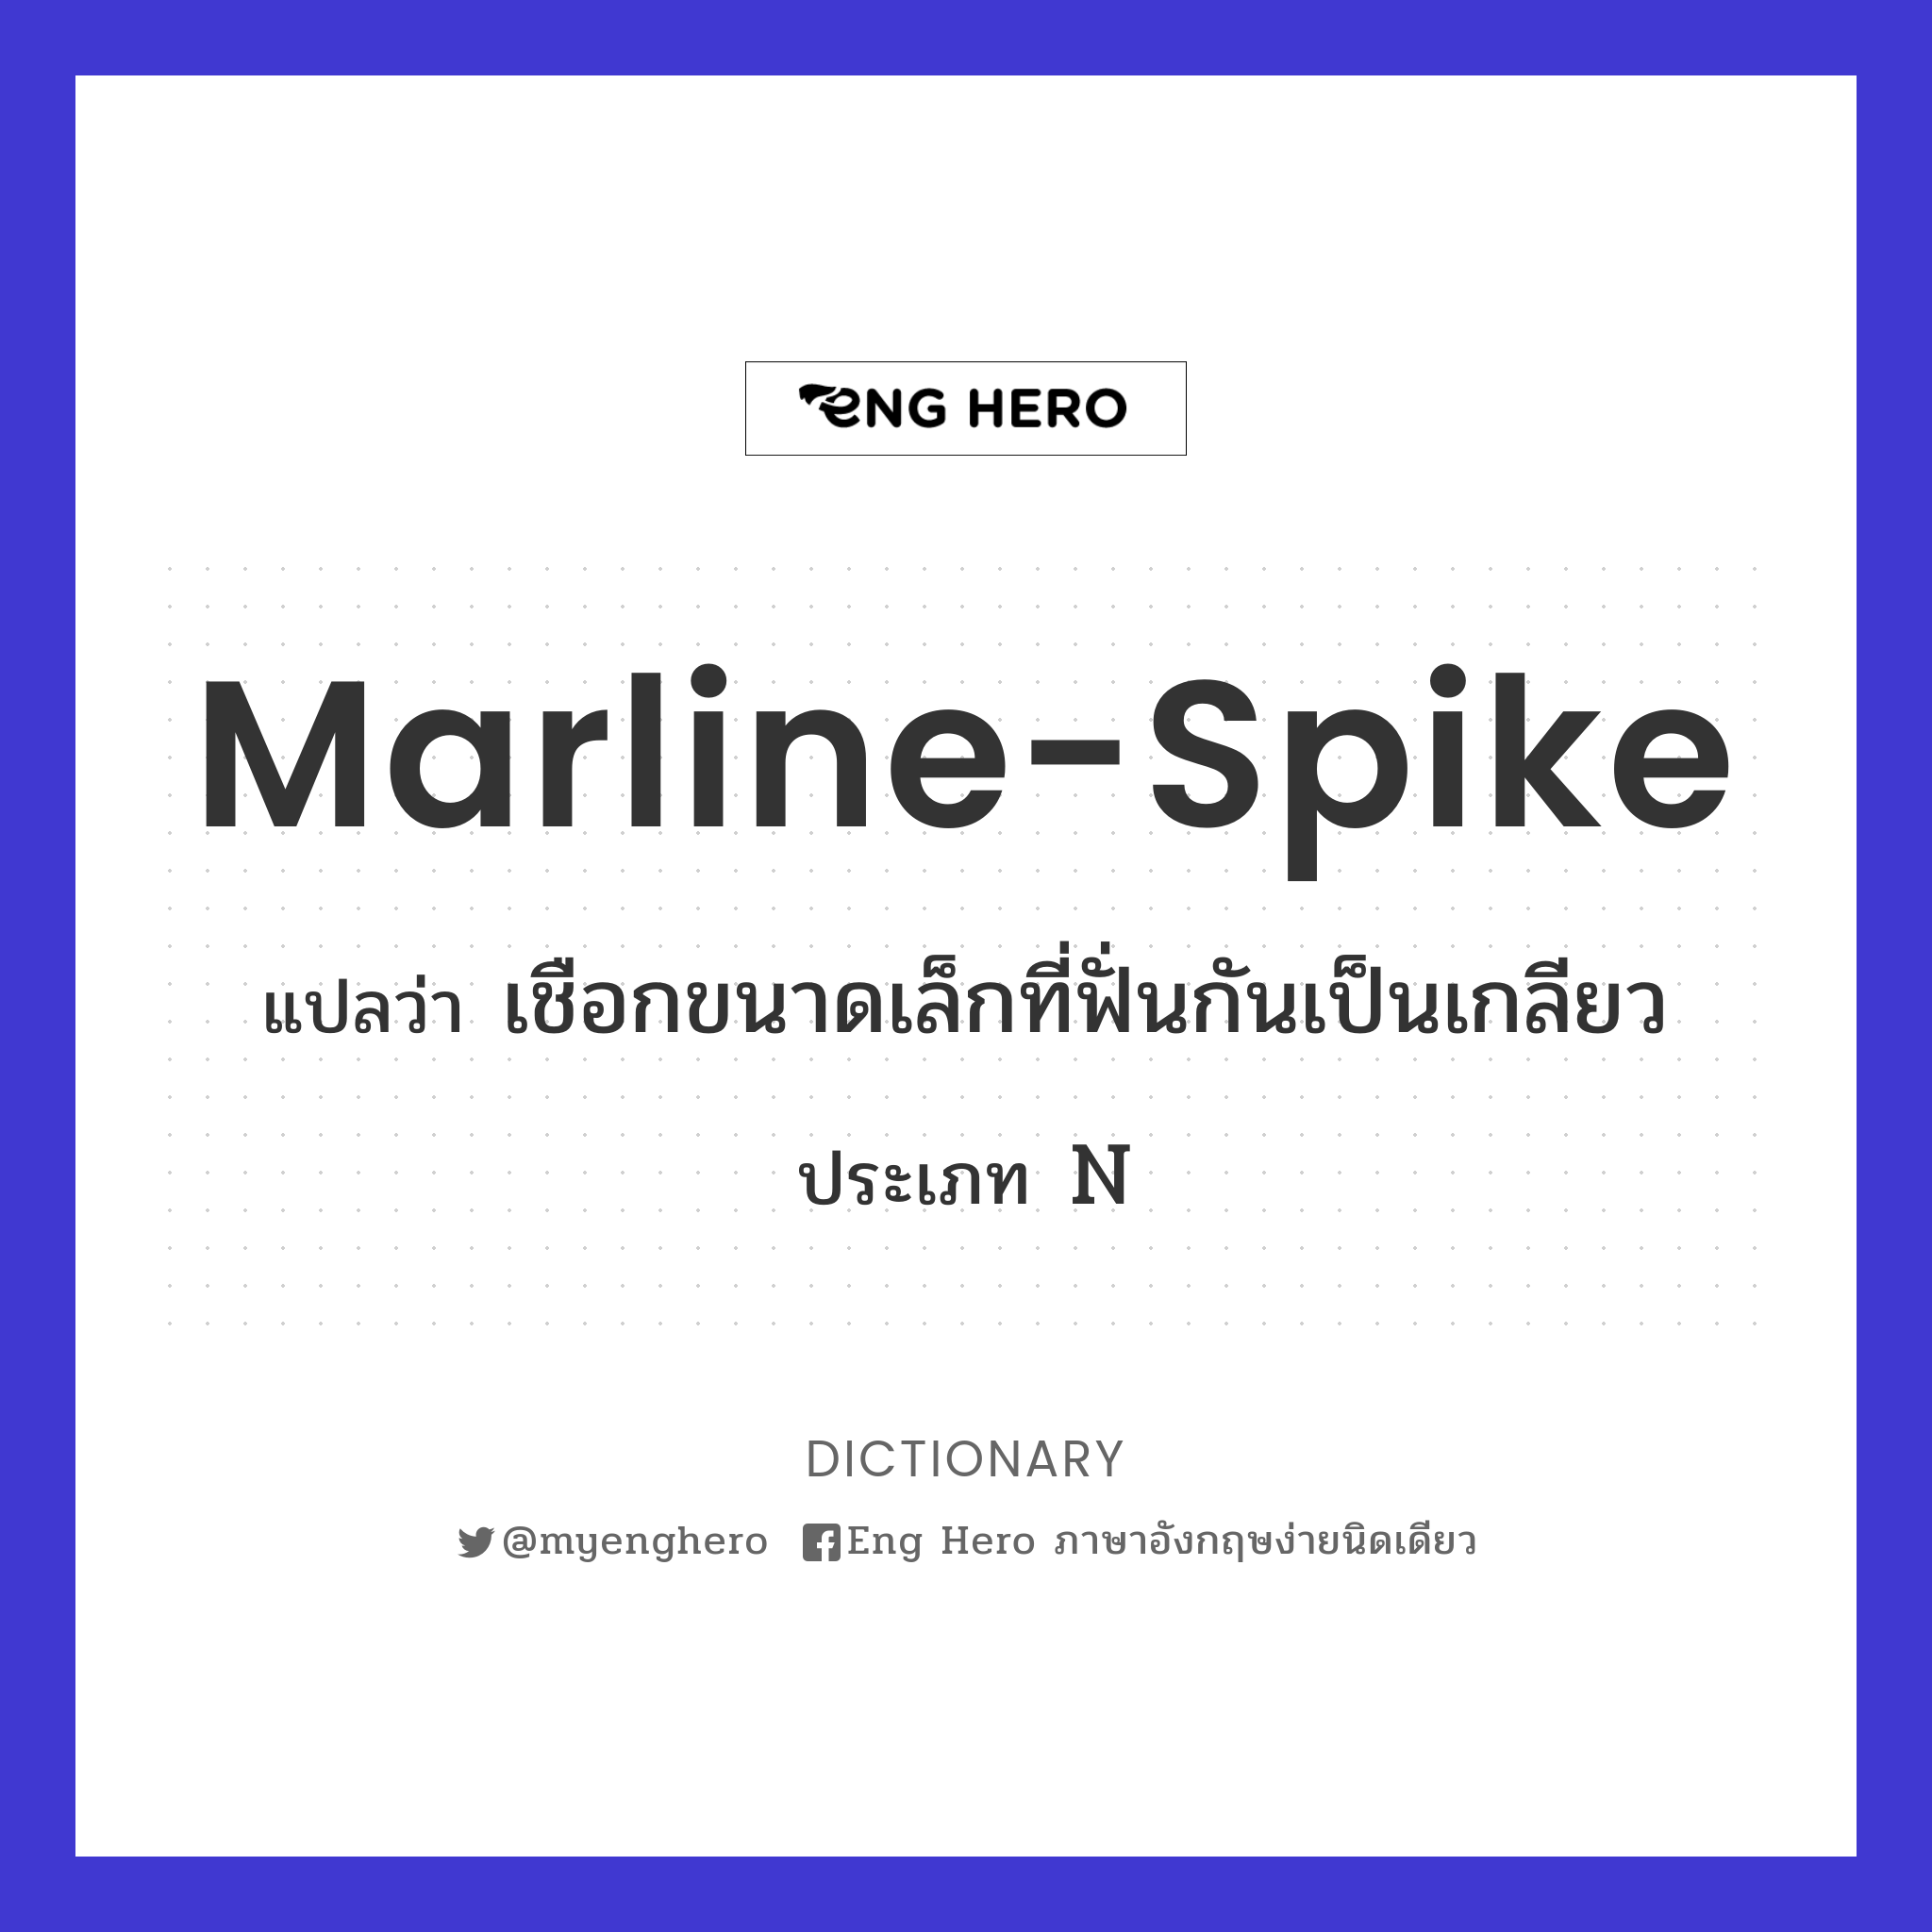 marline-spike